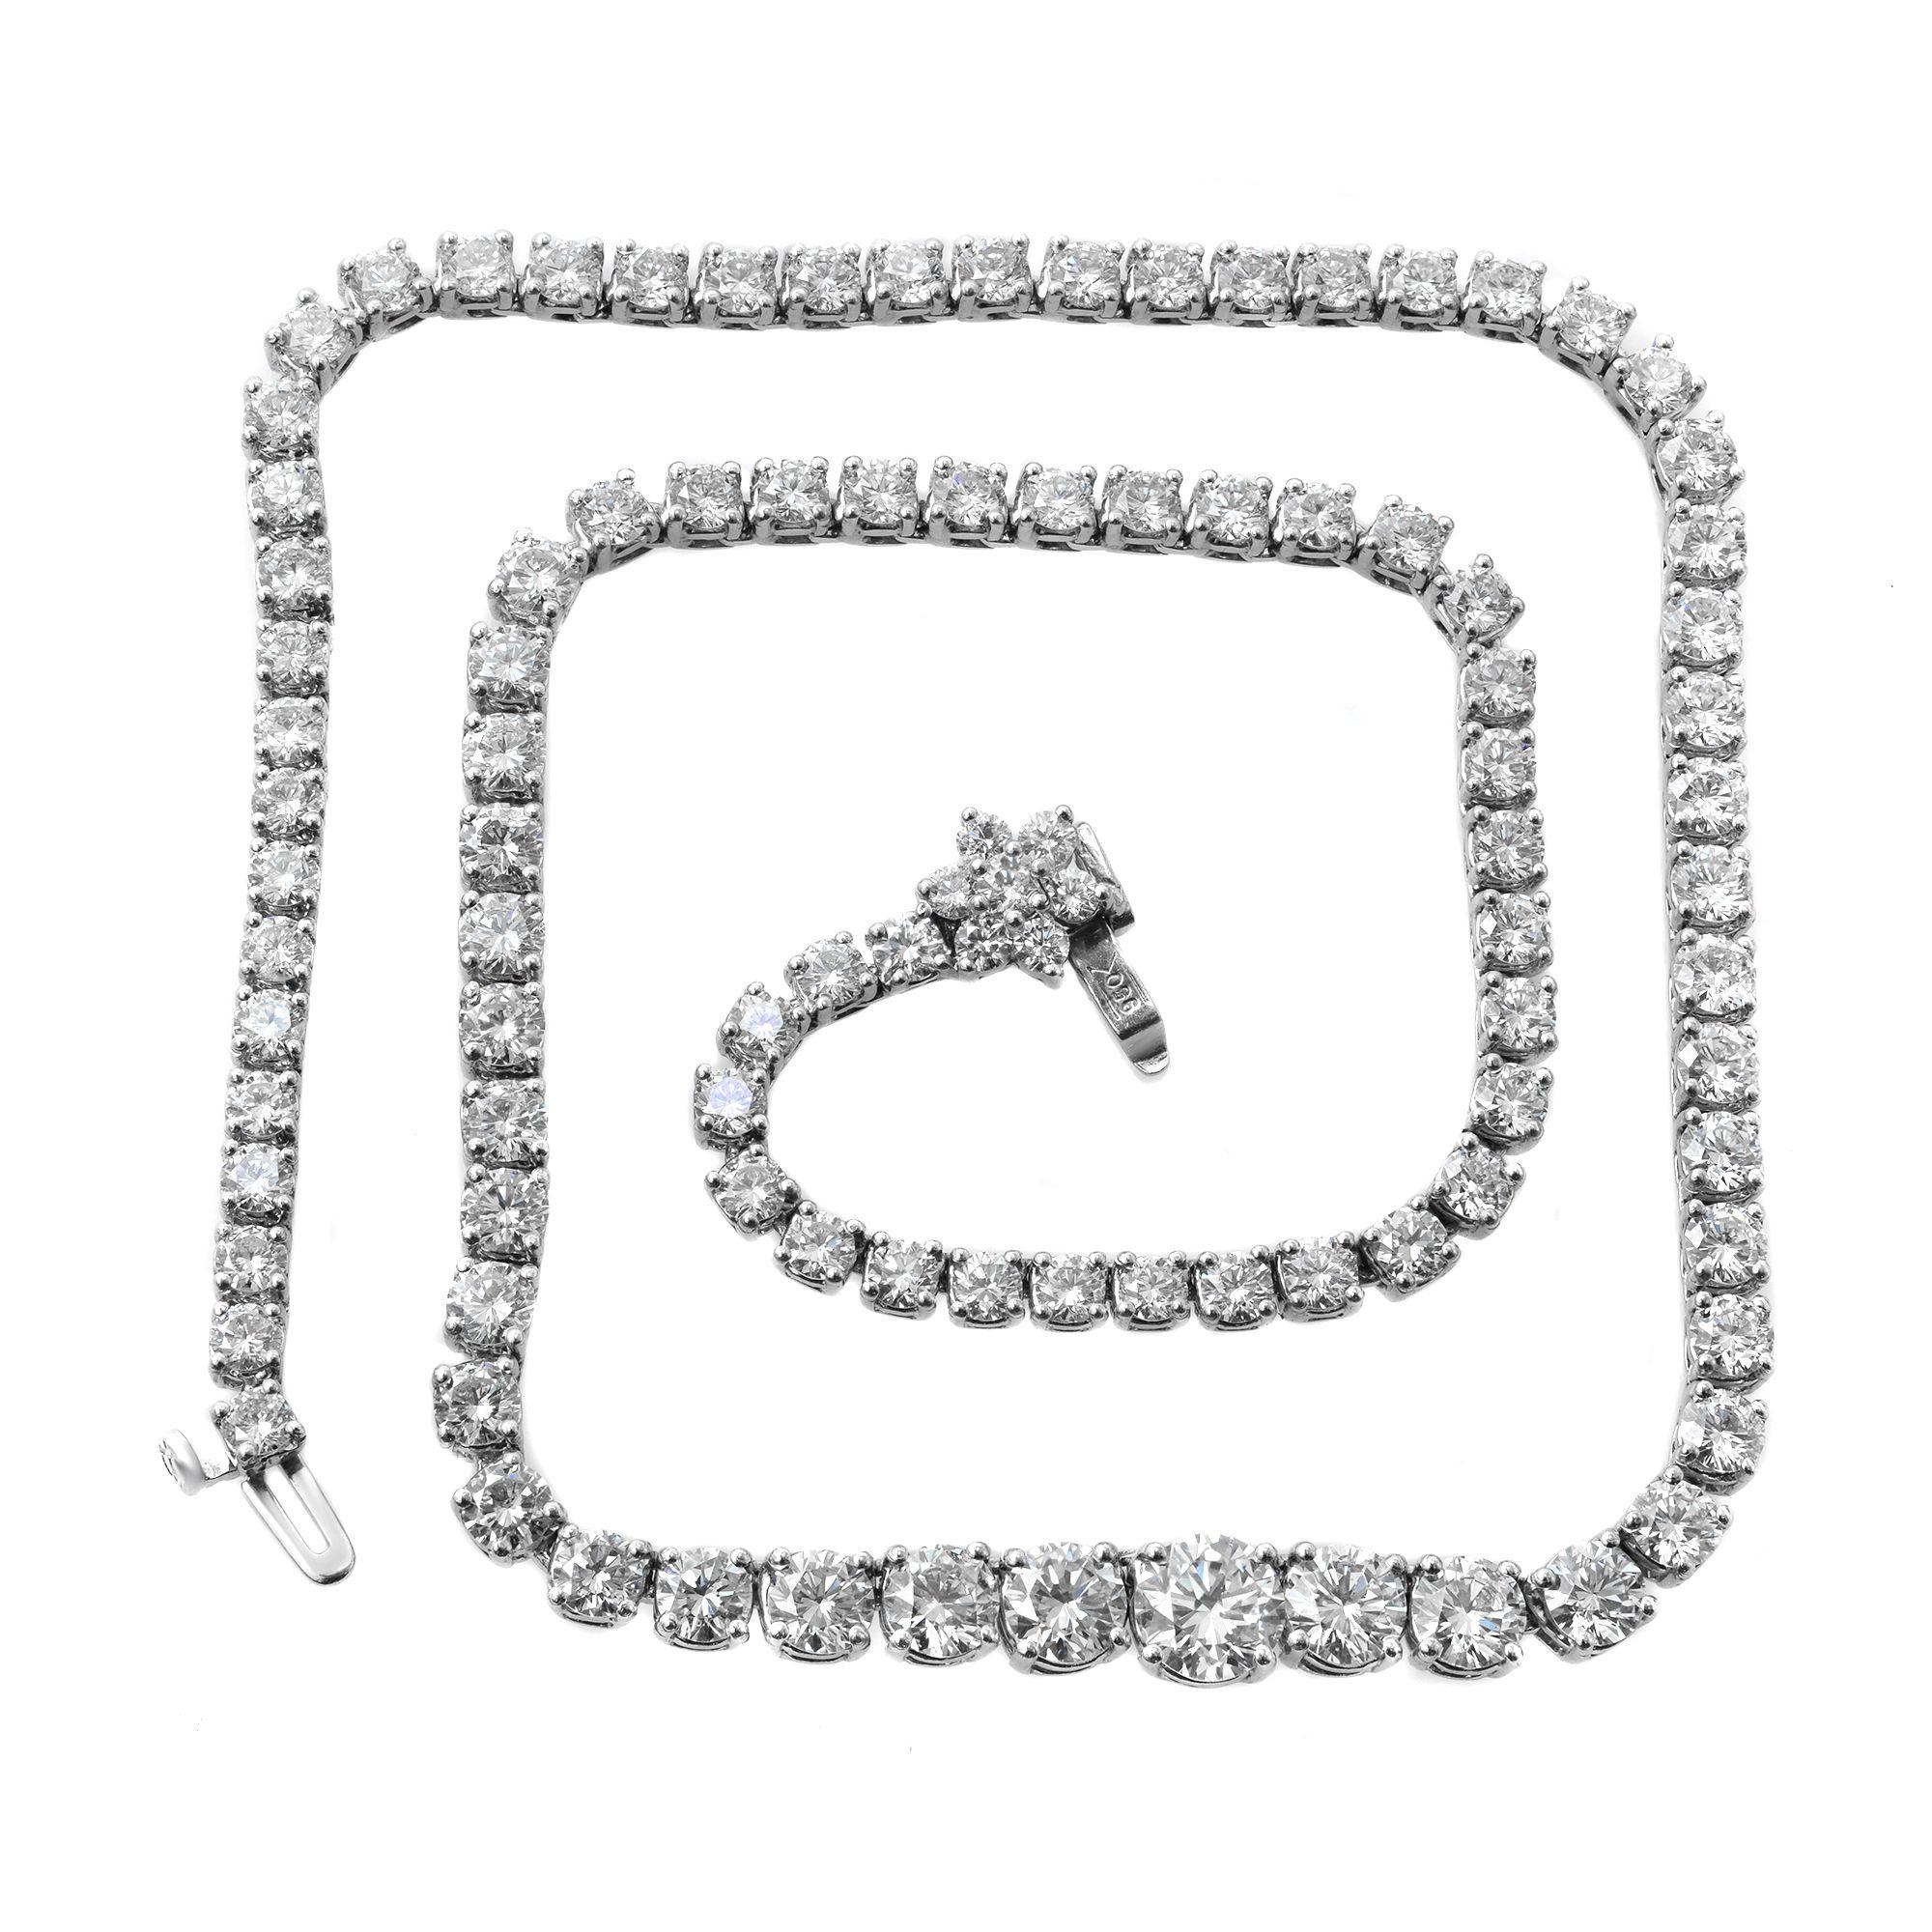 Ce collier Tennis est composé de 102 diamants brillants de taille ronde sertis en platine 950. Comprend un fermoir à bouton-poussoir sécurisé par un fermoir à charnière de sécurité supplémentaire. Poids total en carats, environ 20.00ct. Diamant de